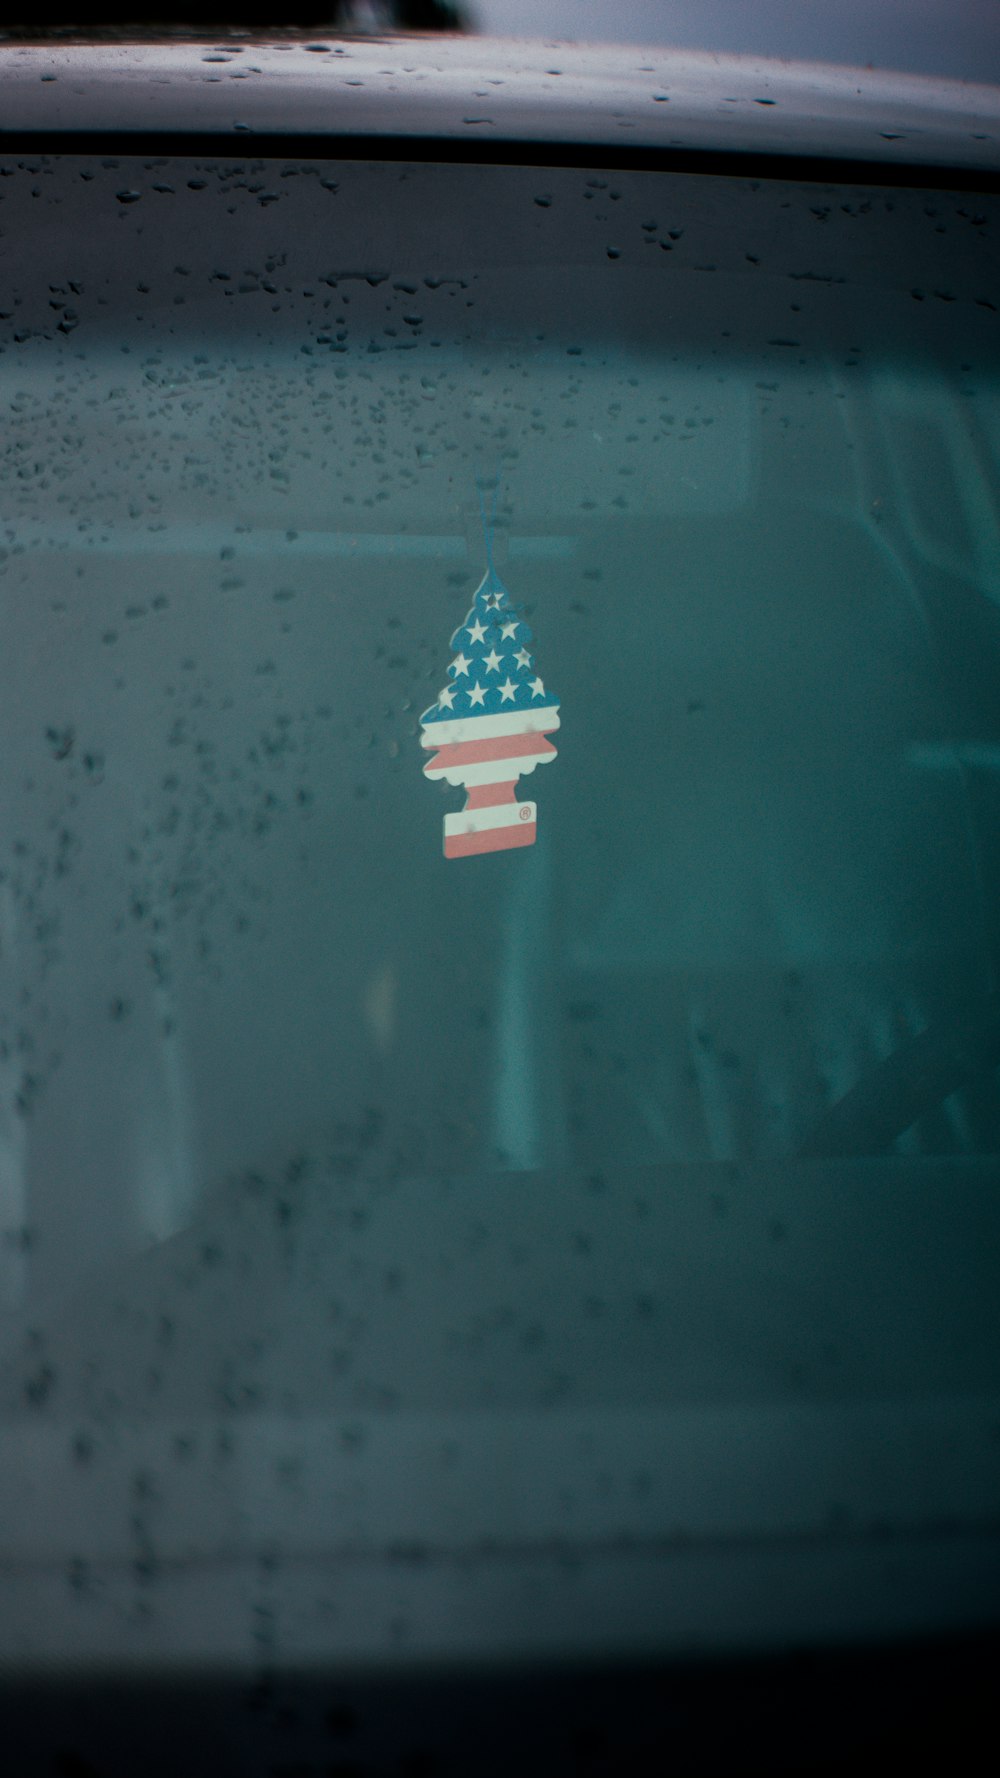 Una calcomanía de la bandera estadounidense en el parabrisas de un automóvil